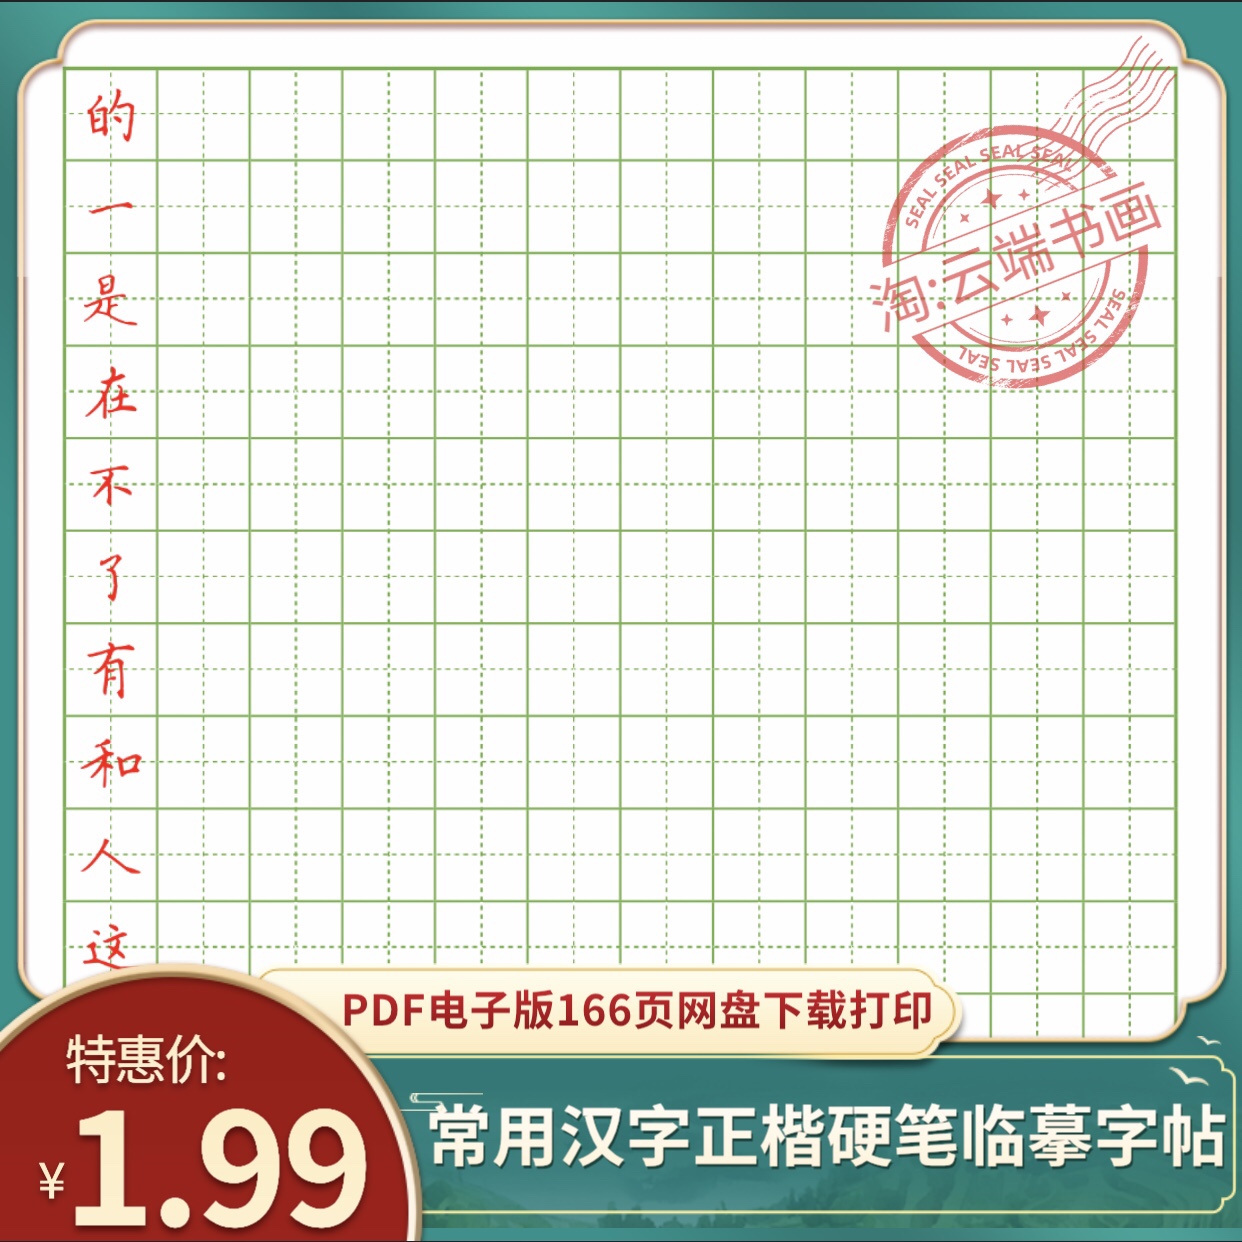 学生常用汉字 楷书硬笔书法临摹字帖 高清电子版PDF 打印模板素材